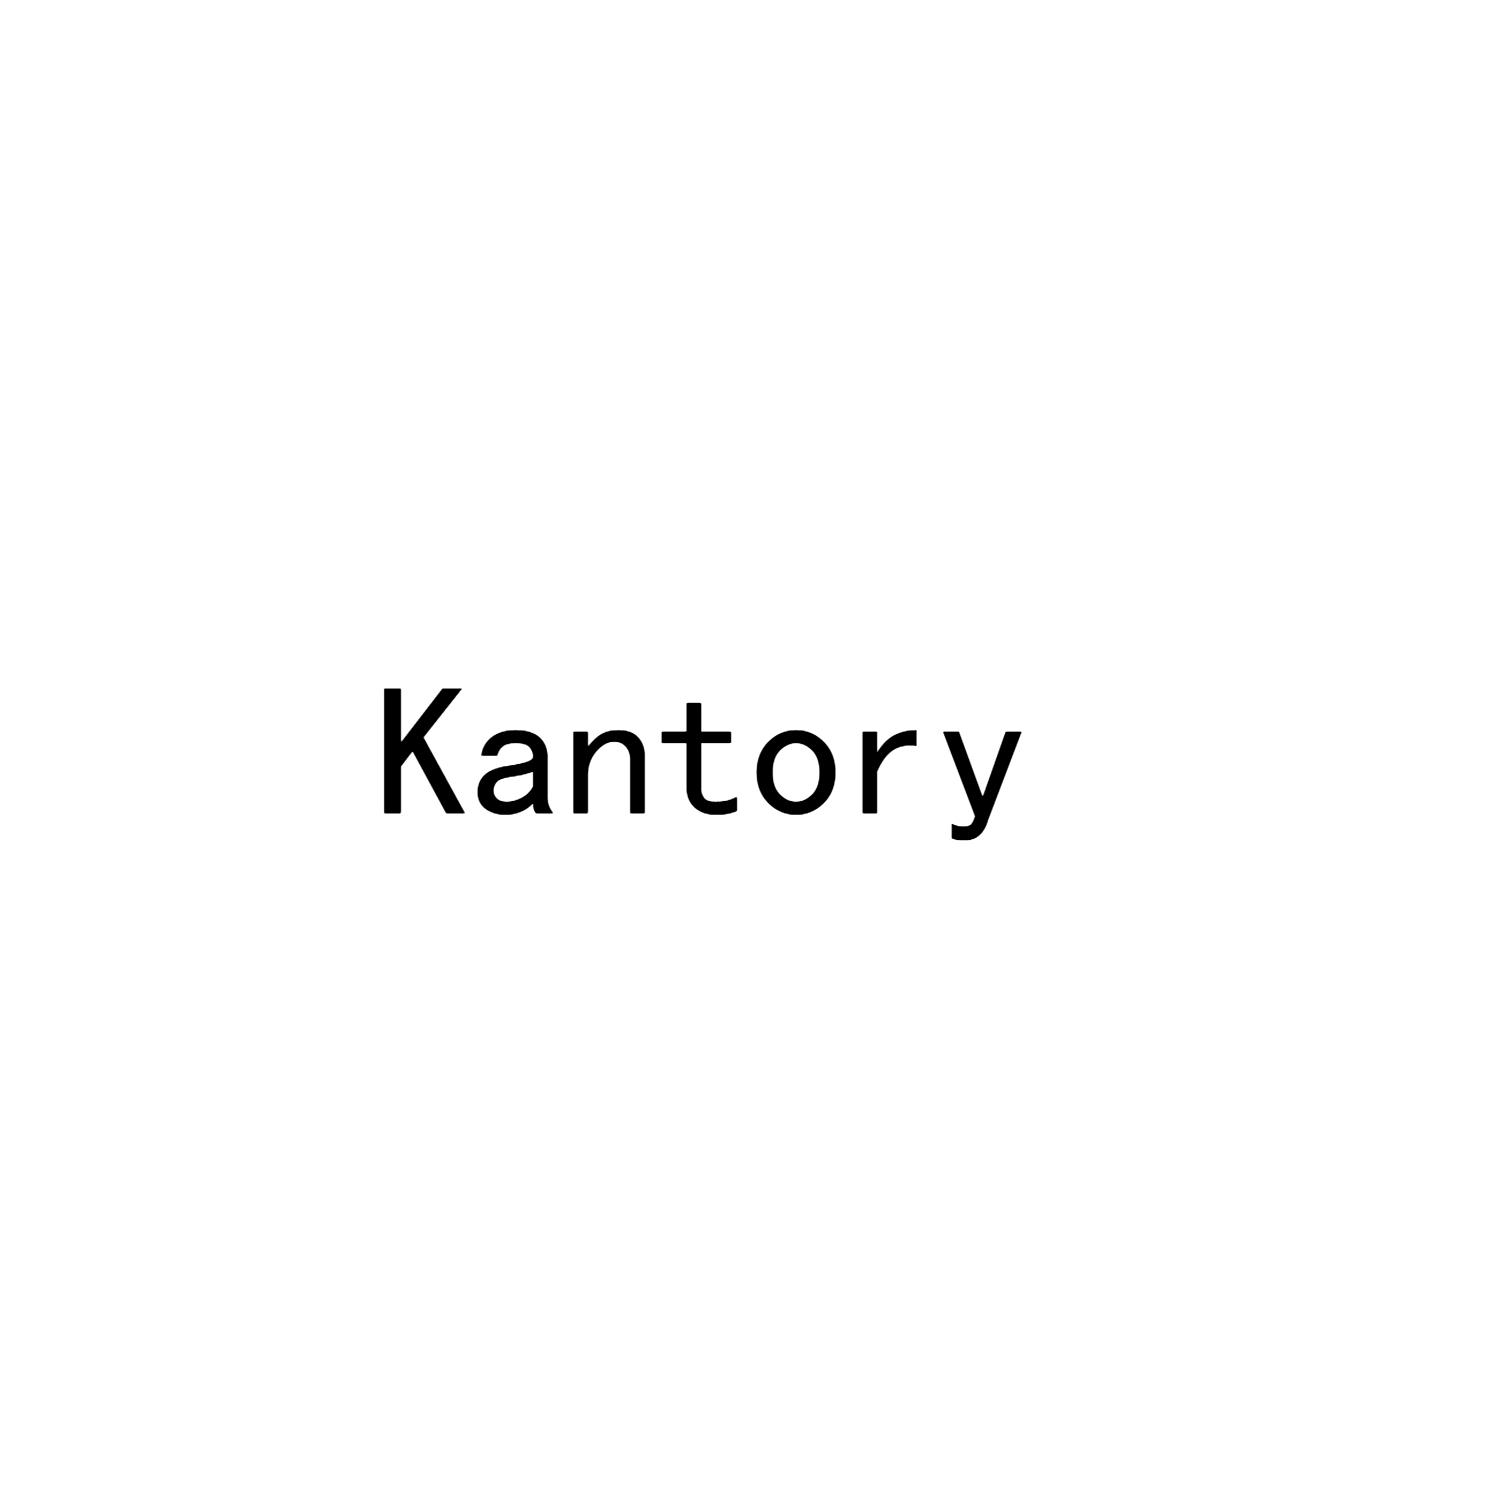 35类-广告销售KANTORY商标转让